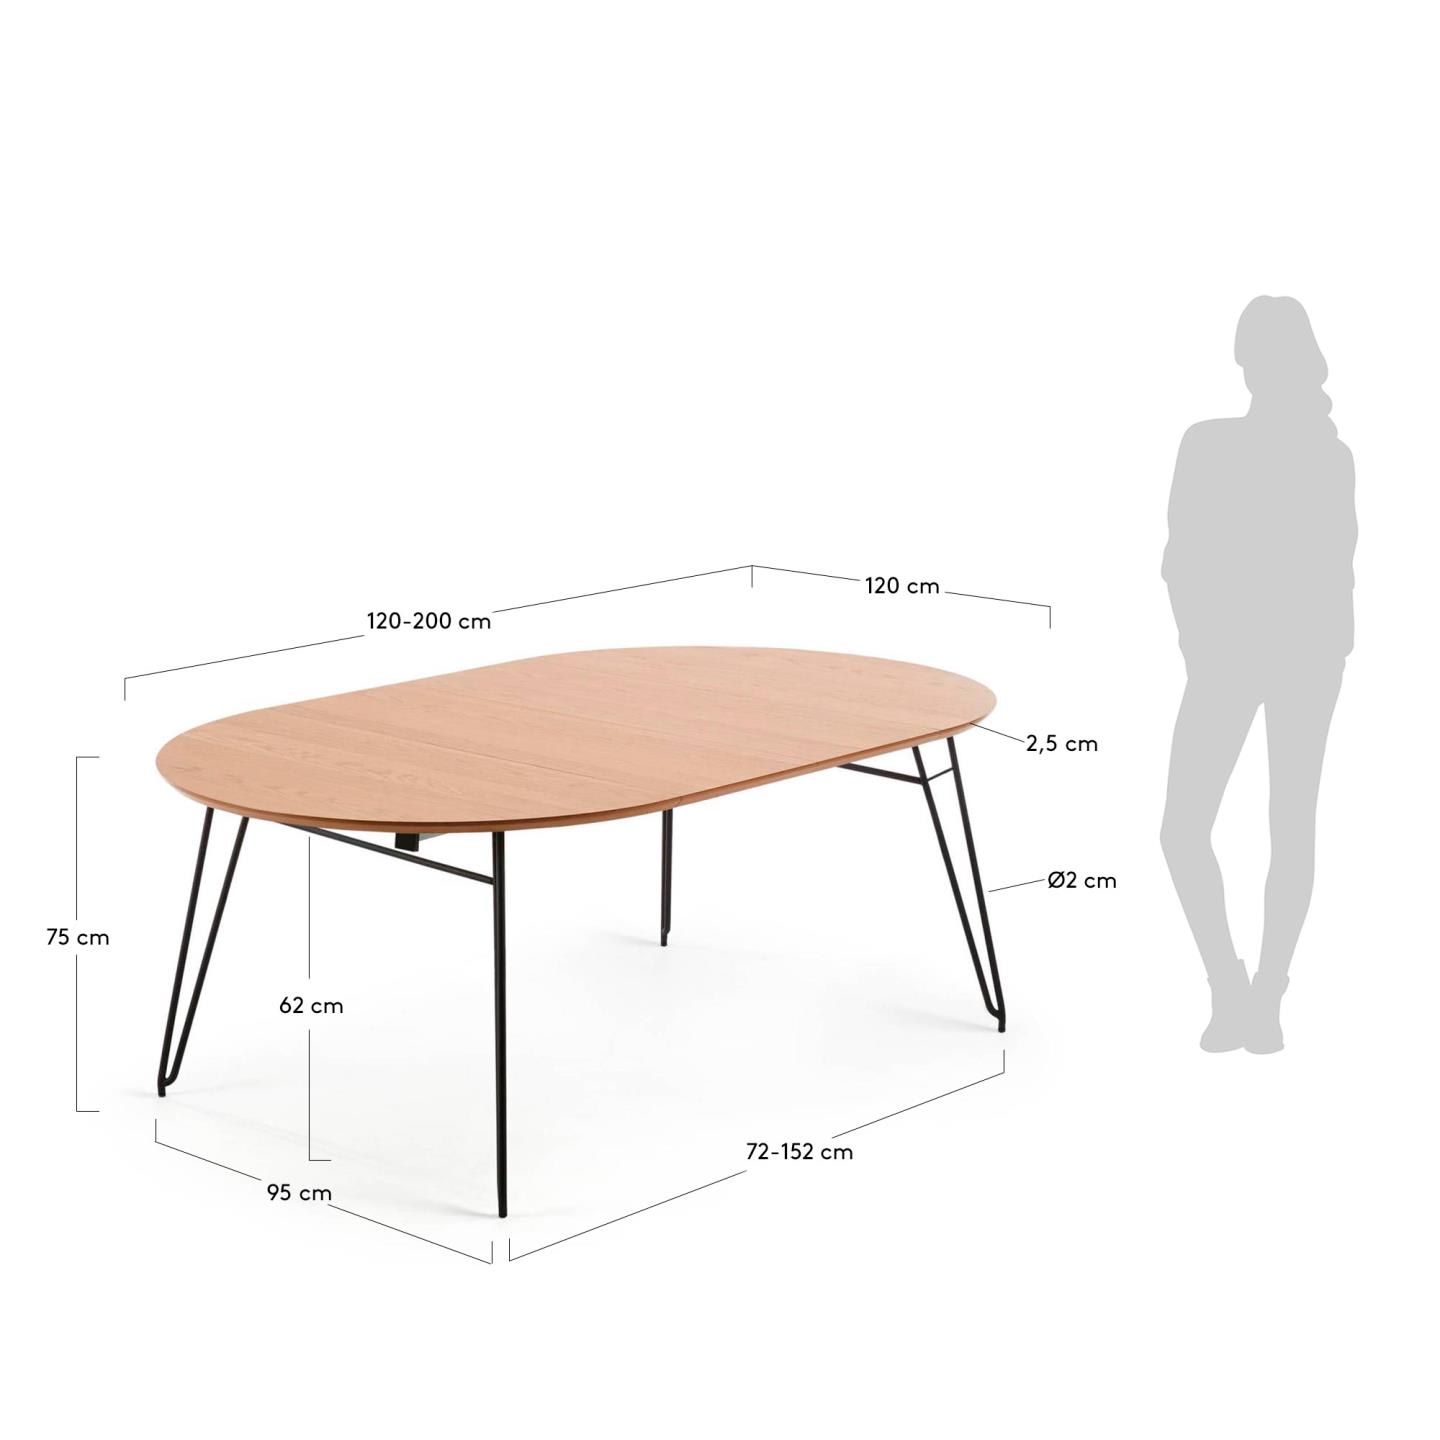 노바 오크 라운드 확장형 테이블 (정원형 120x120-200cm) - 크기